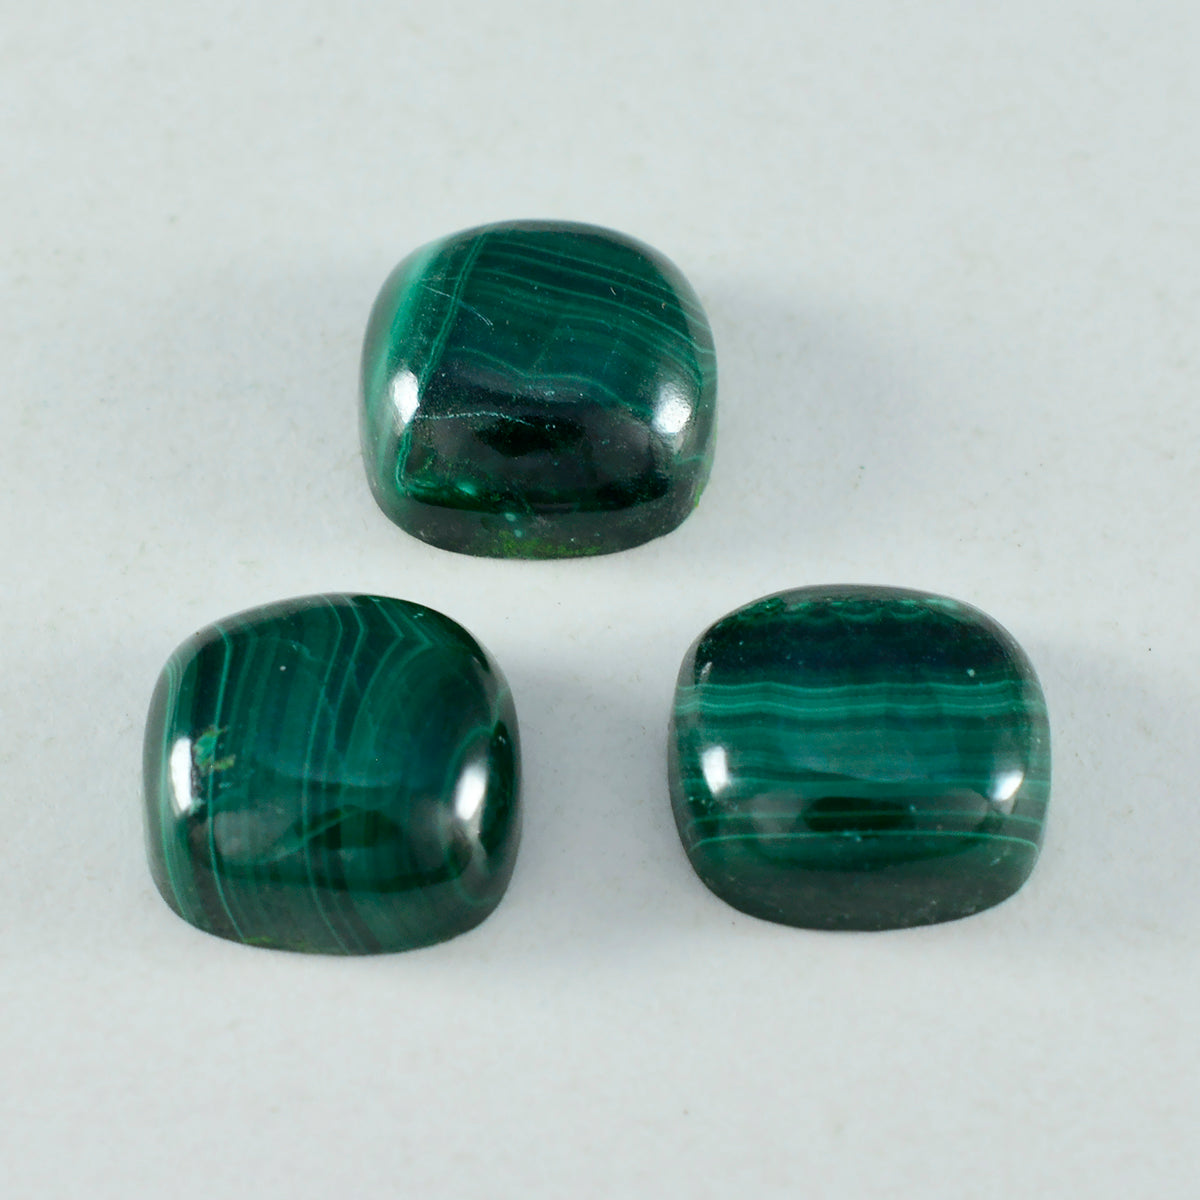 Riyogems 1 pieza cabujón de malaquita verde 9x9 mm forma de cojín gemas sueltas de calidad impresionante